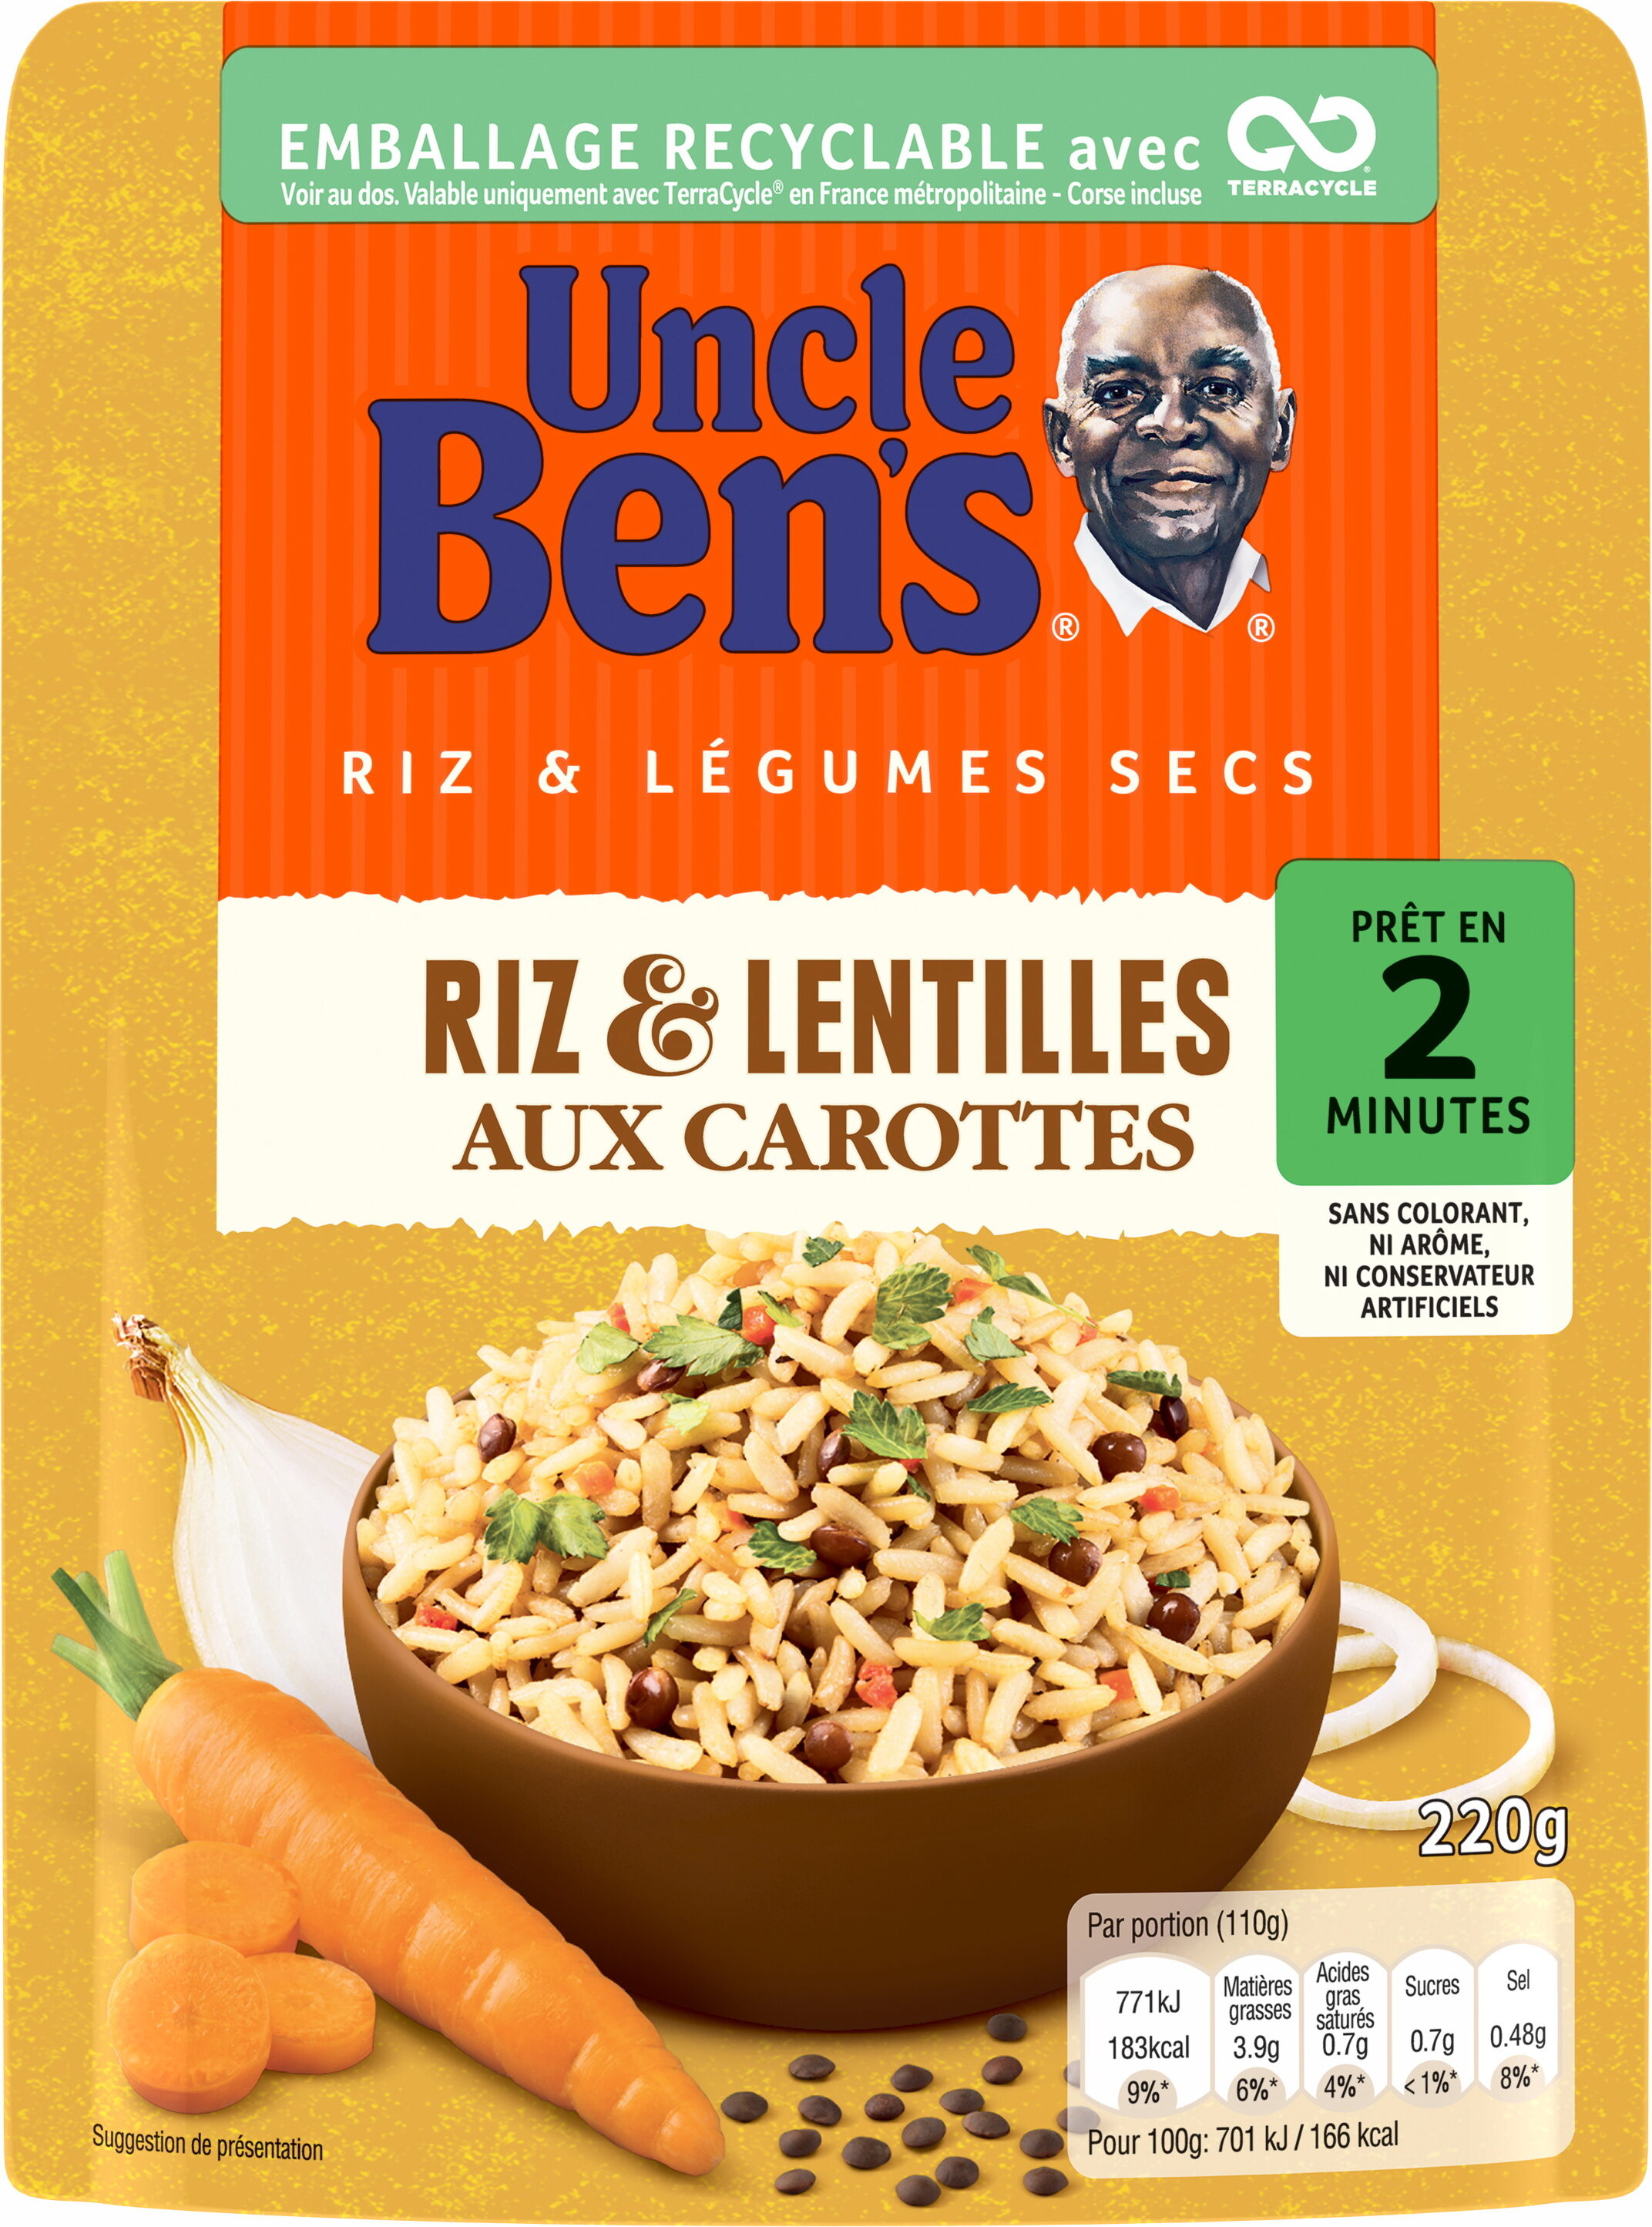 Riz et lentilles aux carottes - Product - fr